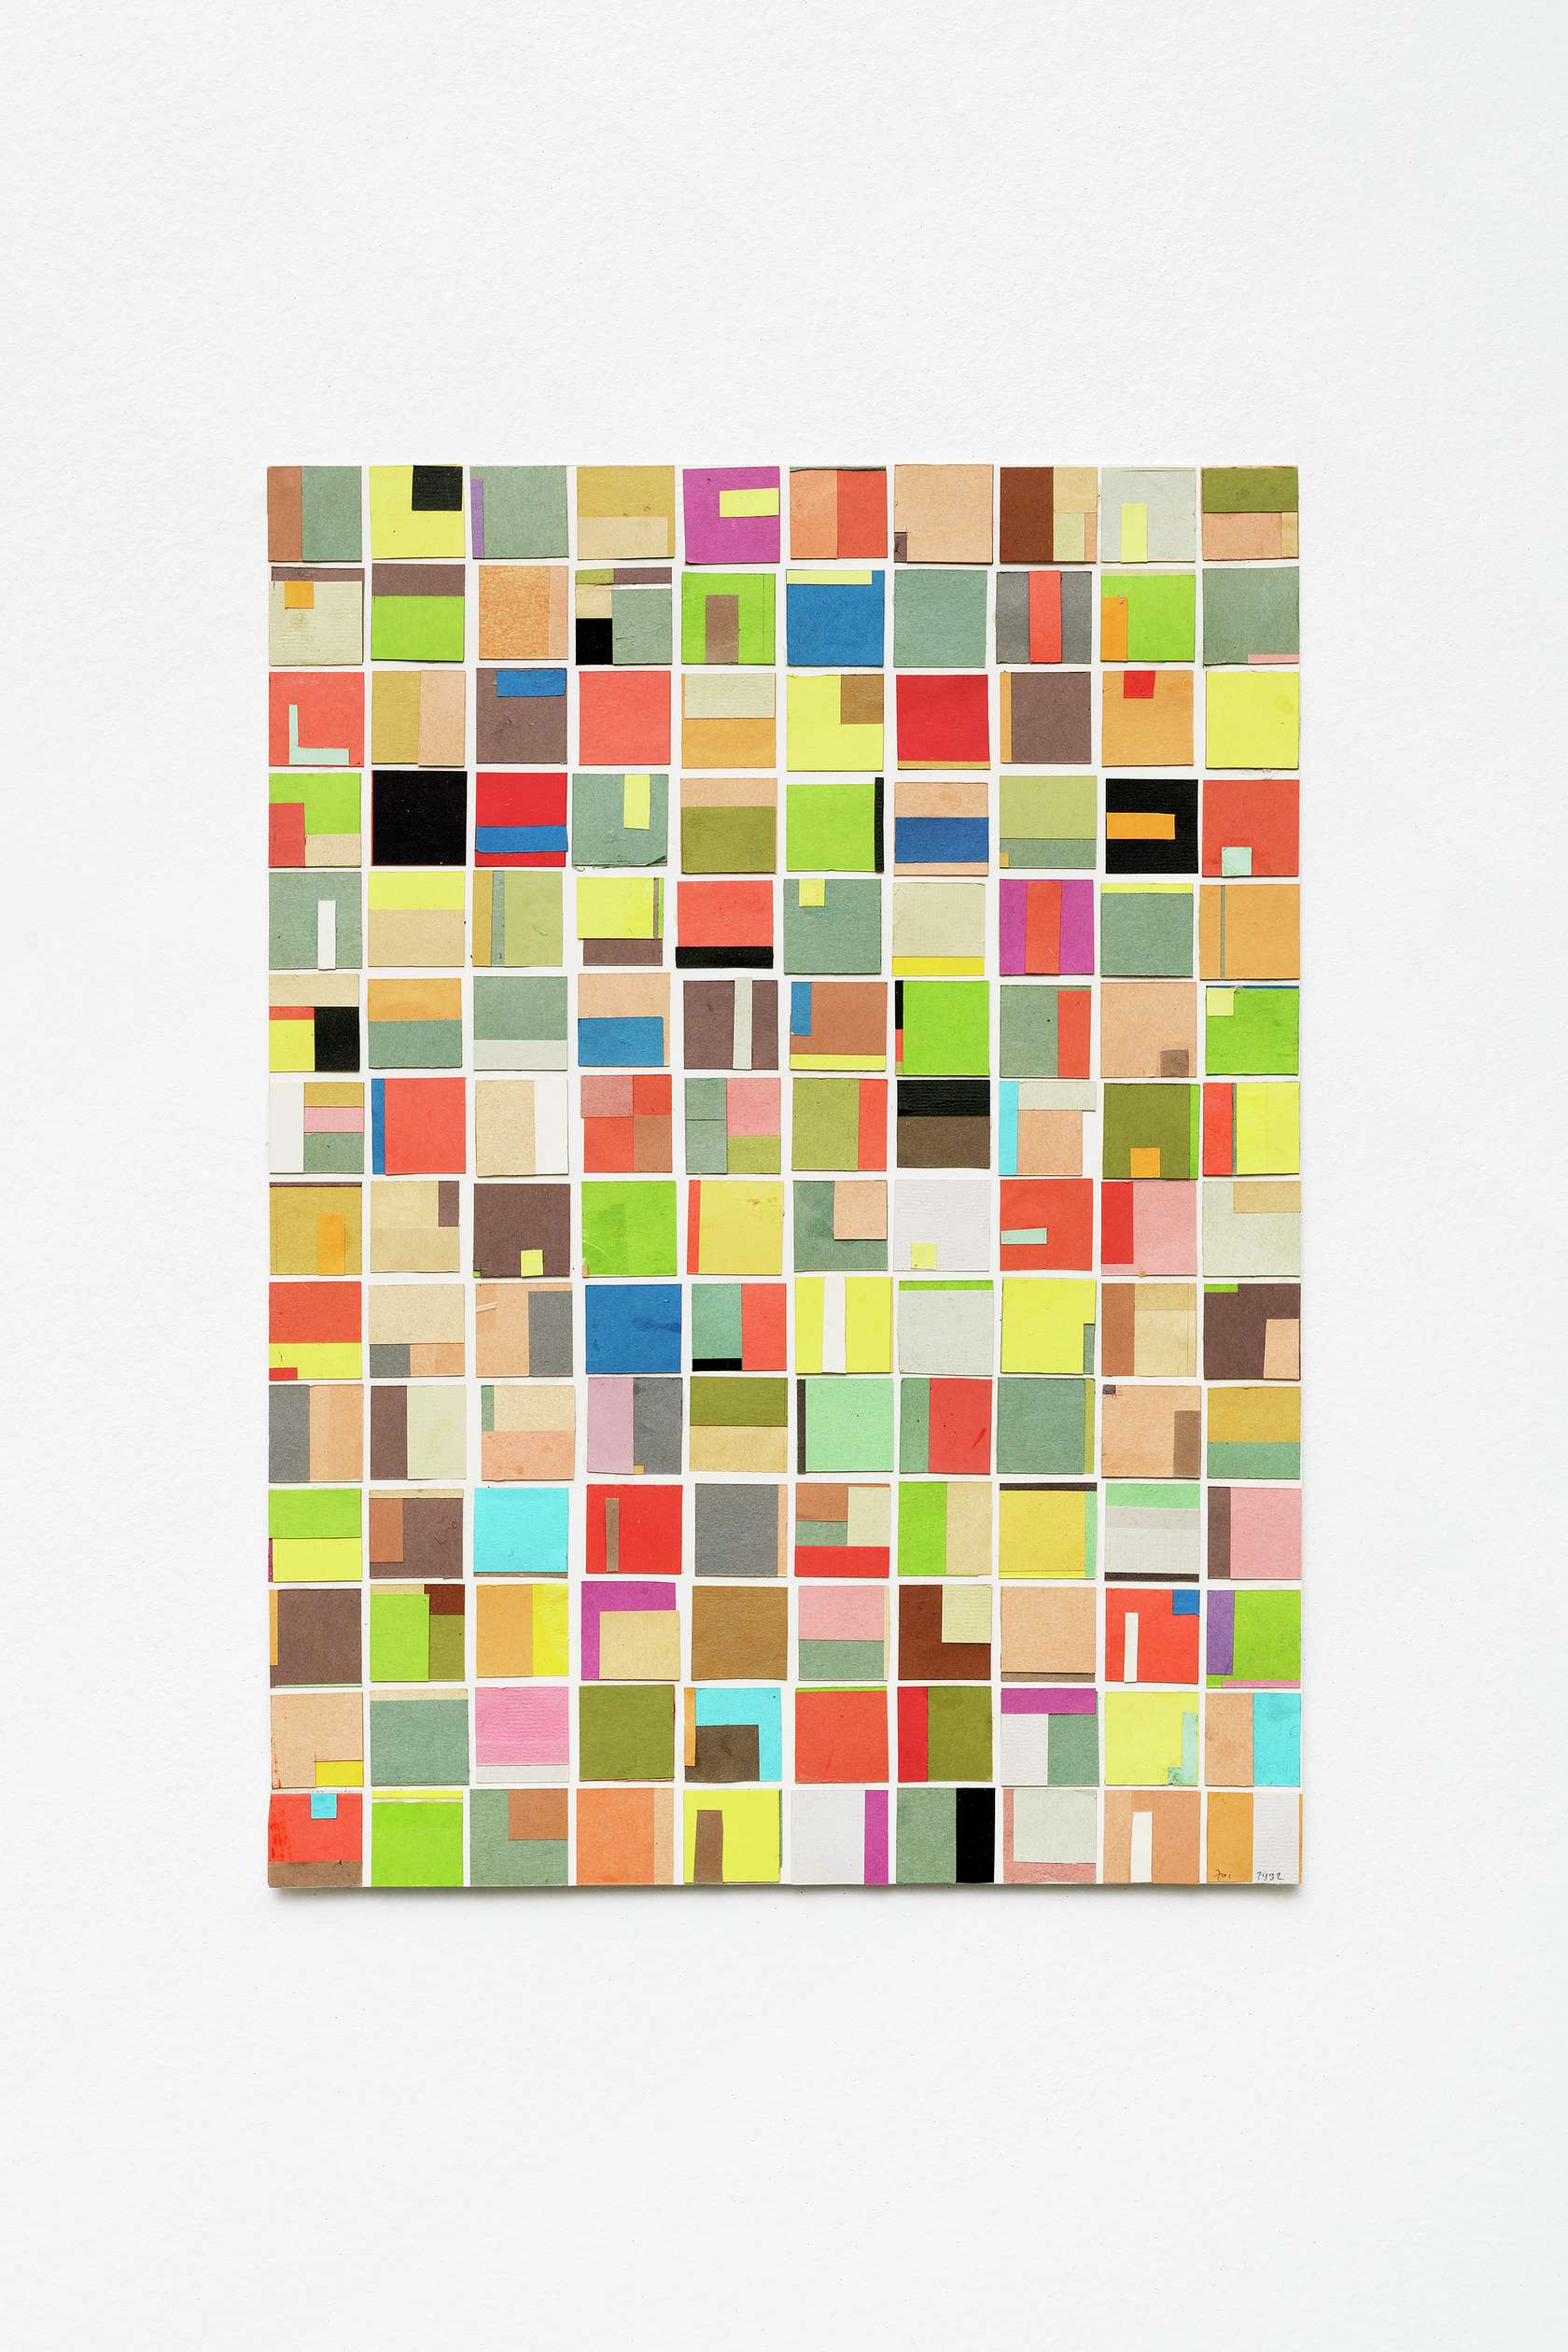 Beat Zoderer, Klebstück, 1992 Collage de papier coloré45 × 32.5 cm / 17 6/8 × 12 6/8 in.